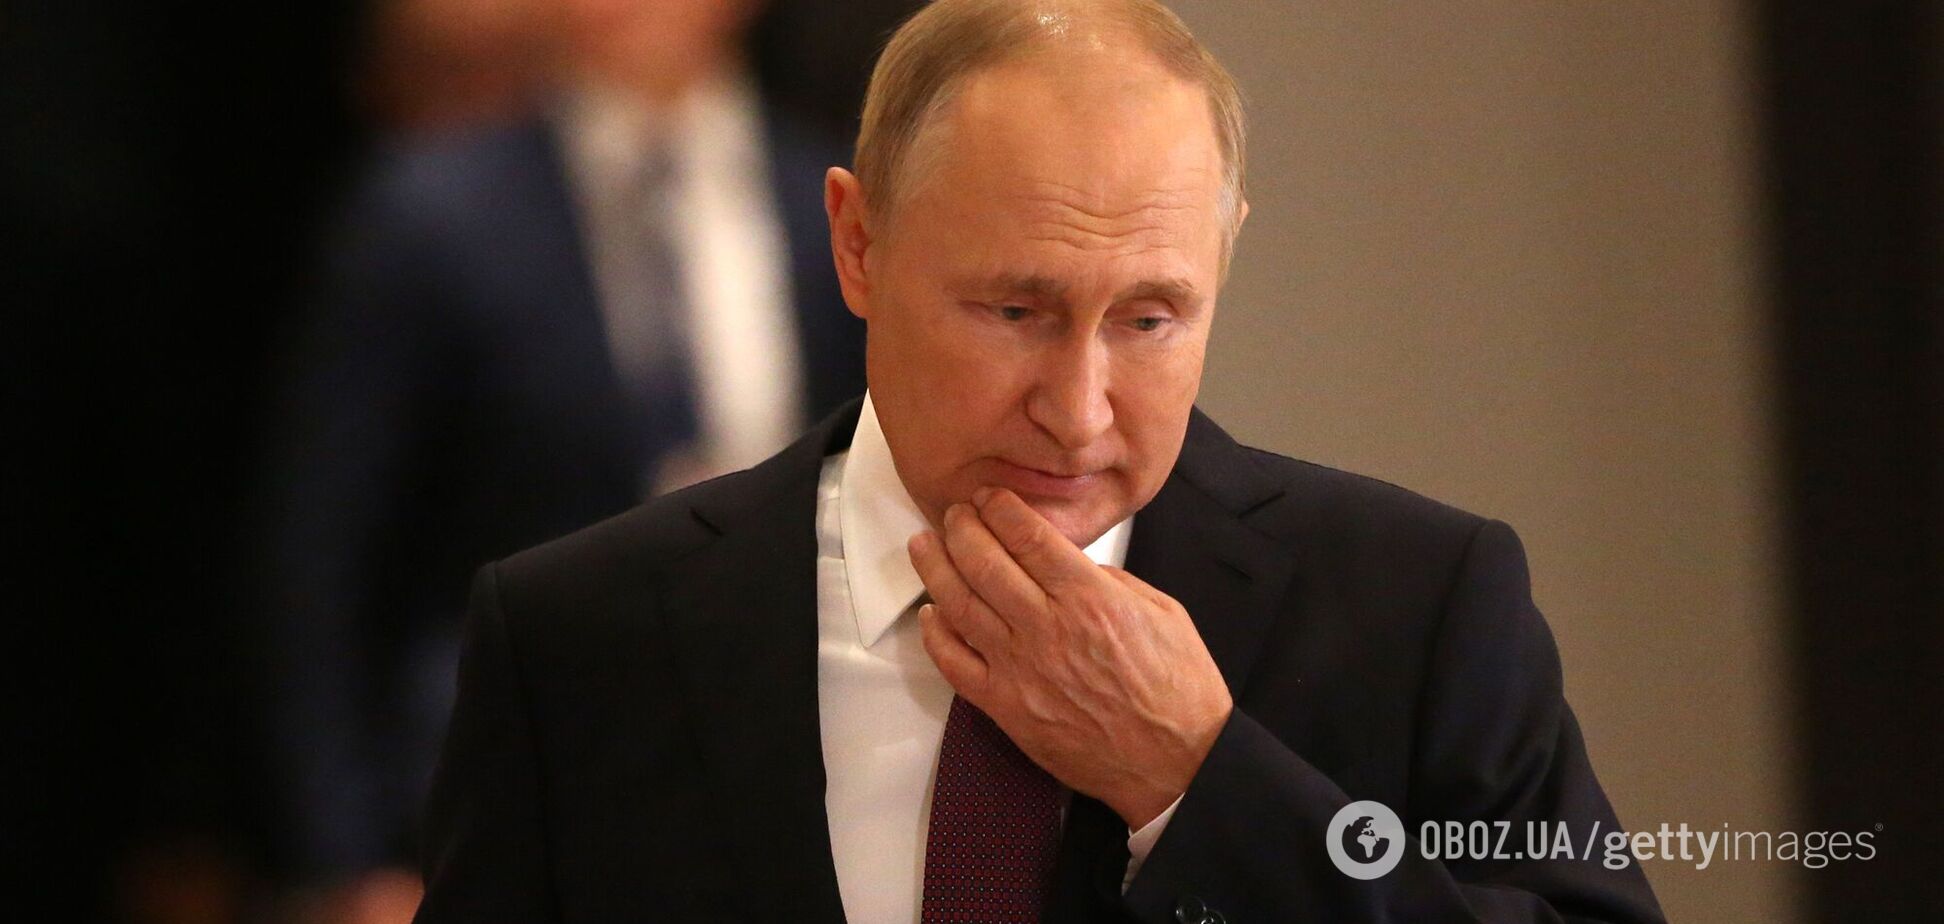 Останній політичний акорд Путіна: у режиму немає жодних шансів на виживання